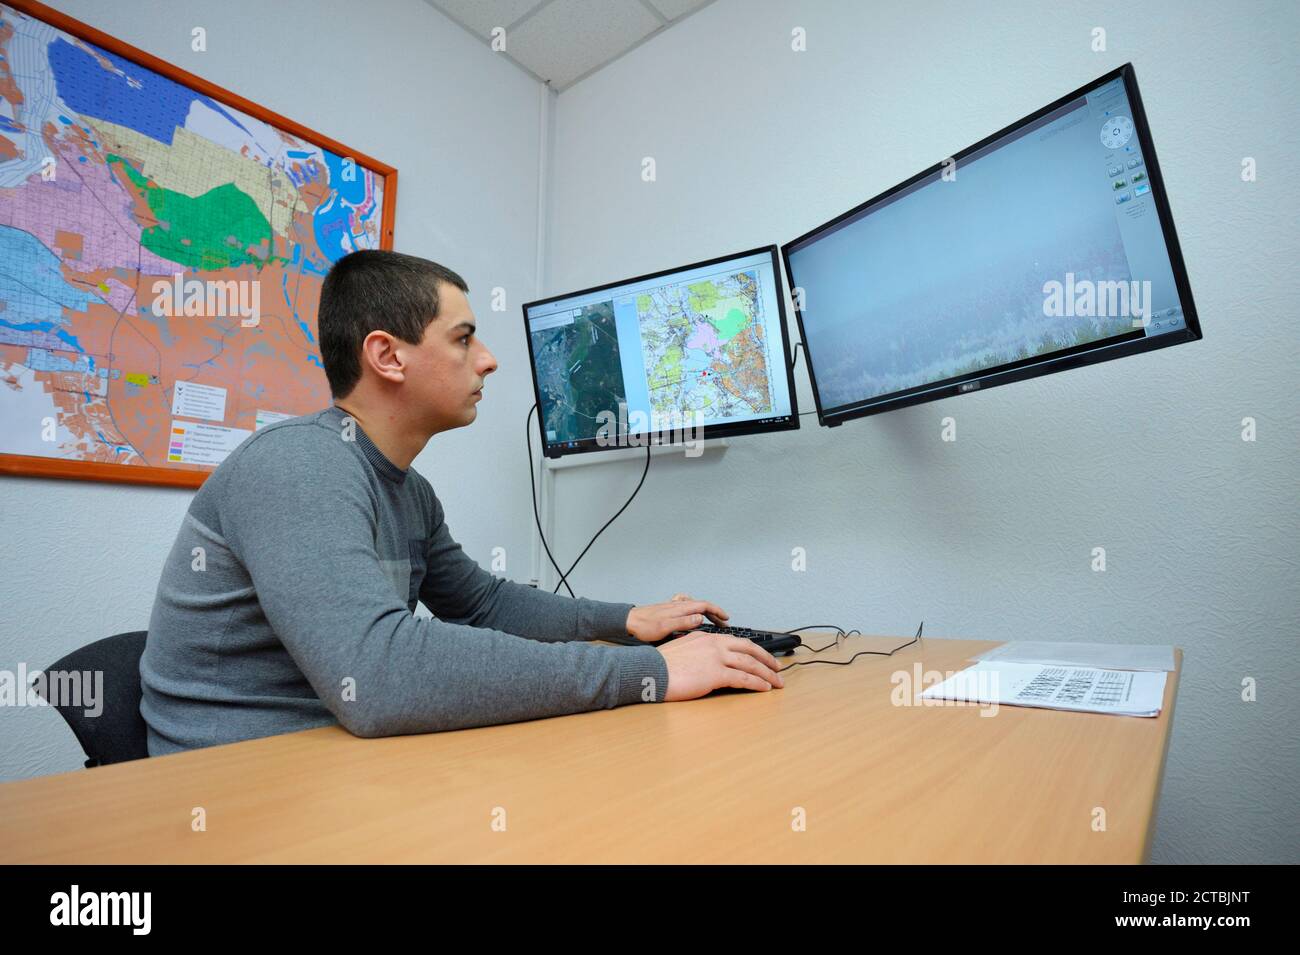 In der Feuerwache Videoüberwachungsraum: Bediener sitzt vor Monitoren beobachten Brandgefahren in Wäldern Stockfoto